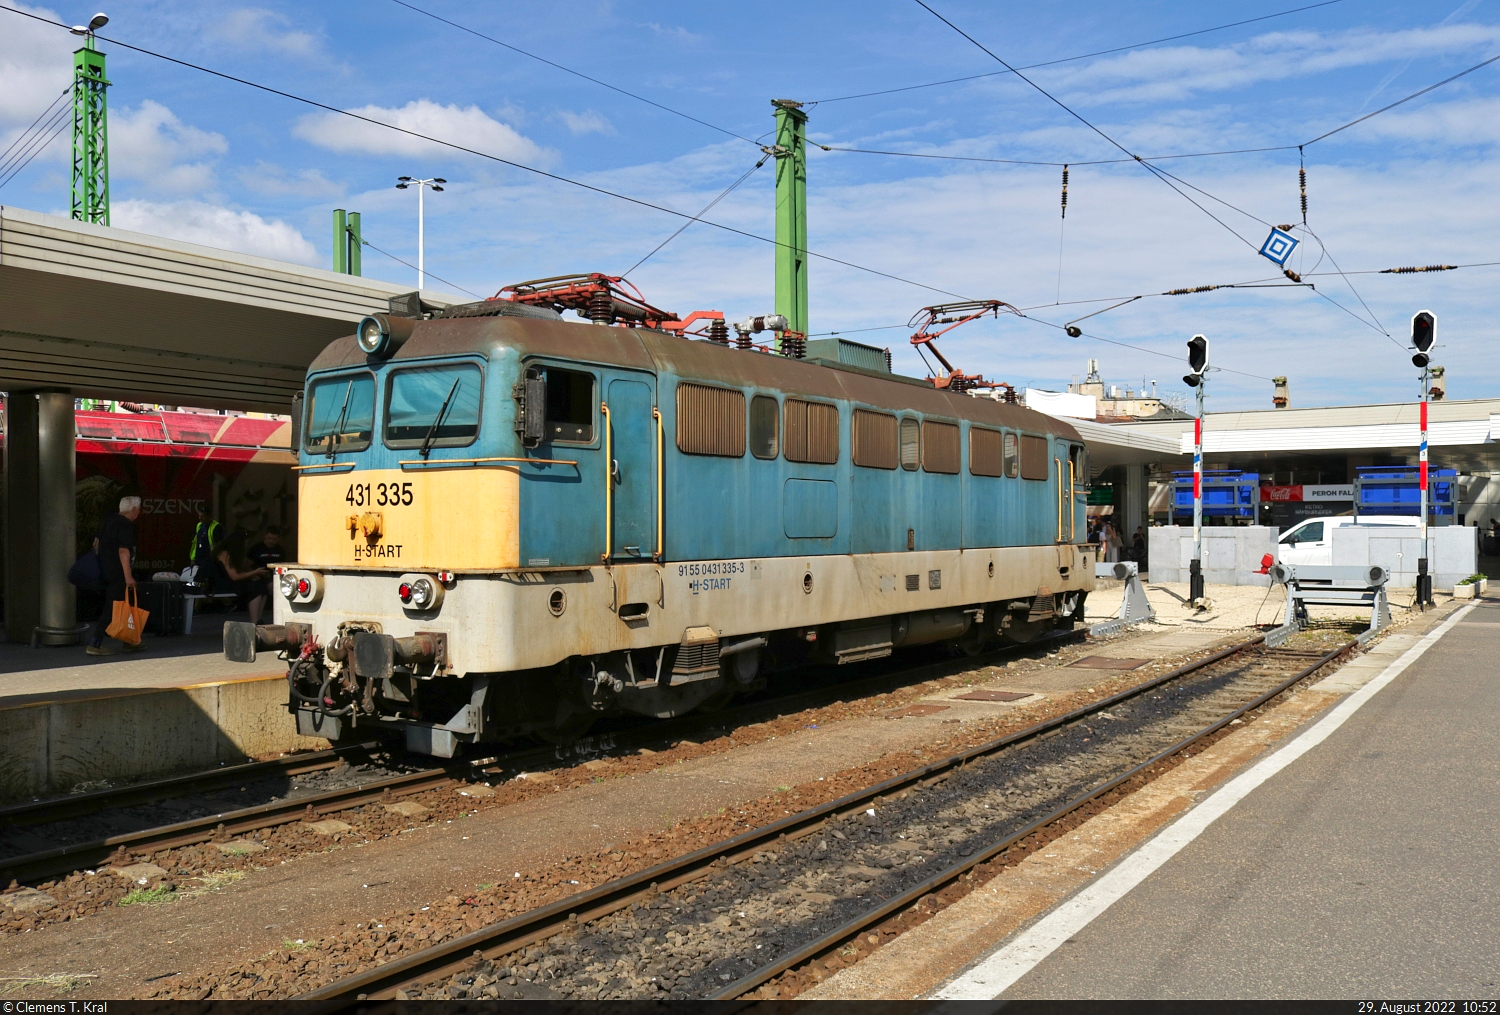 Am Prellbock von Gleis 4 des Bahnhof Budapest-Déli pu (HU) wartet 431 335-3, bis die Wagen, mit denen sie vorher eingefahren ist, von einer Schwesterlok herausgezogen werden.

🧰 MÁV
🕓 29.8.2022 | 10:52 Uhr